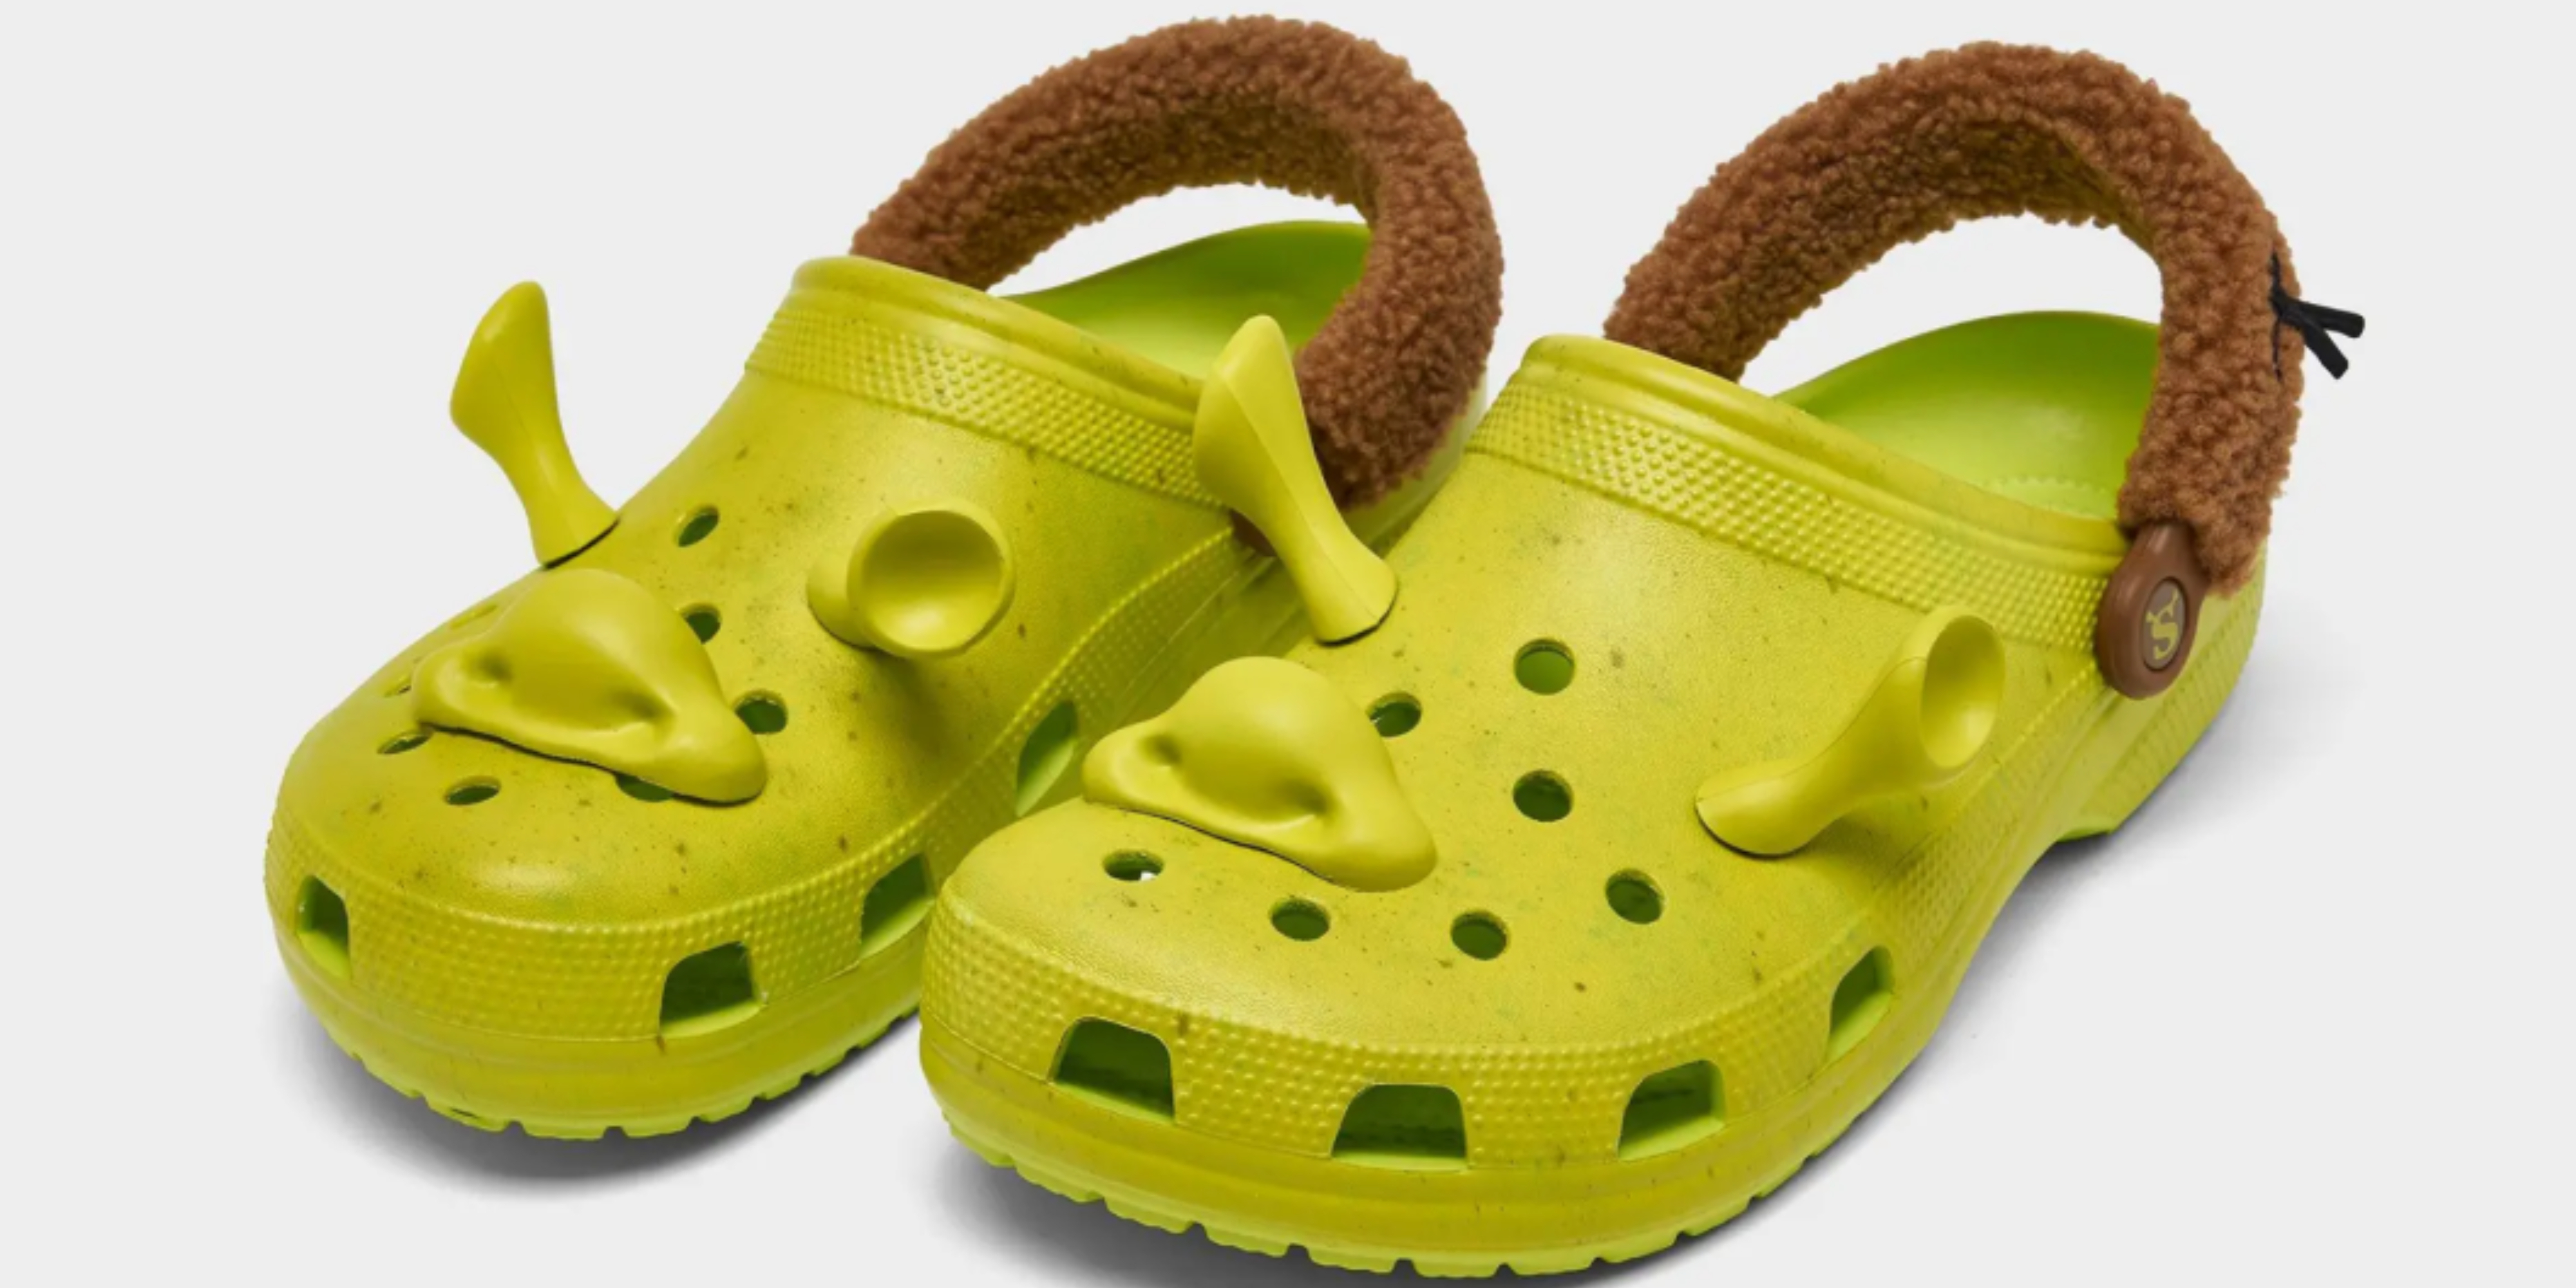 Shrek x Crocs Classic Clogs: All We Know - Sportskeeda Stories